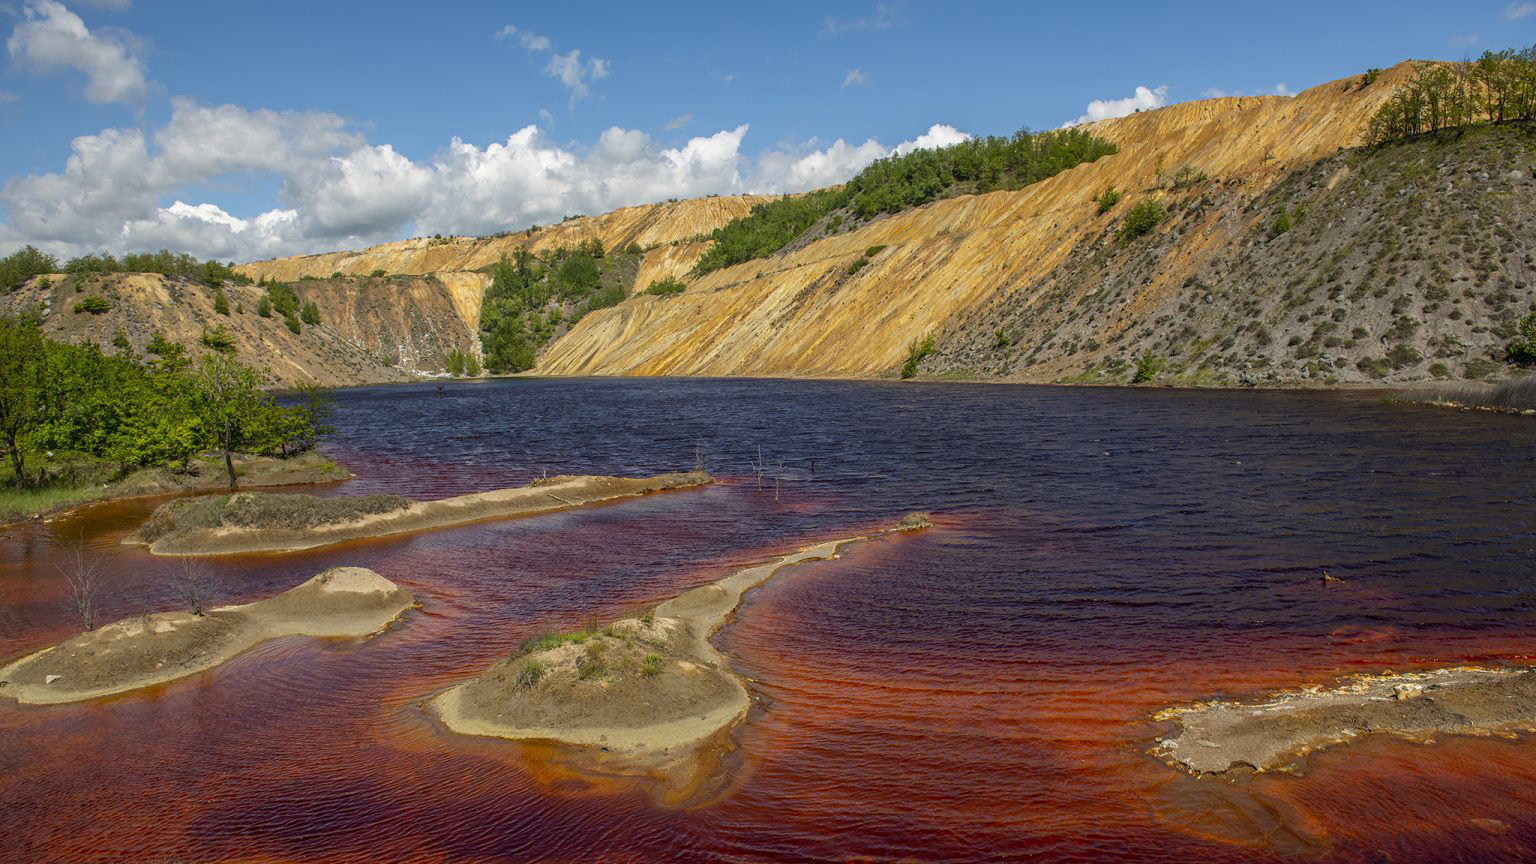 Zagađeno jezero pored deponije sa površinskog kopa u Boru. Foto: Nemanja Pančić/Just Finance International